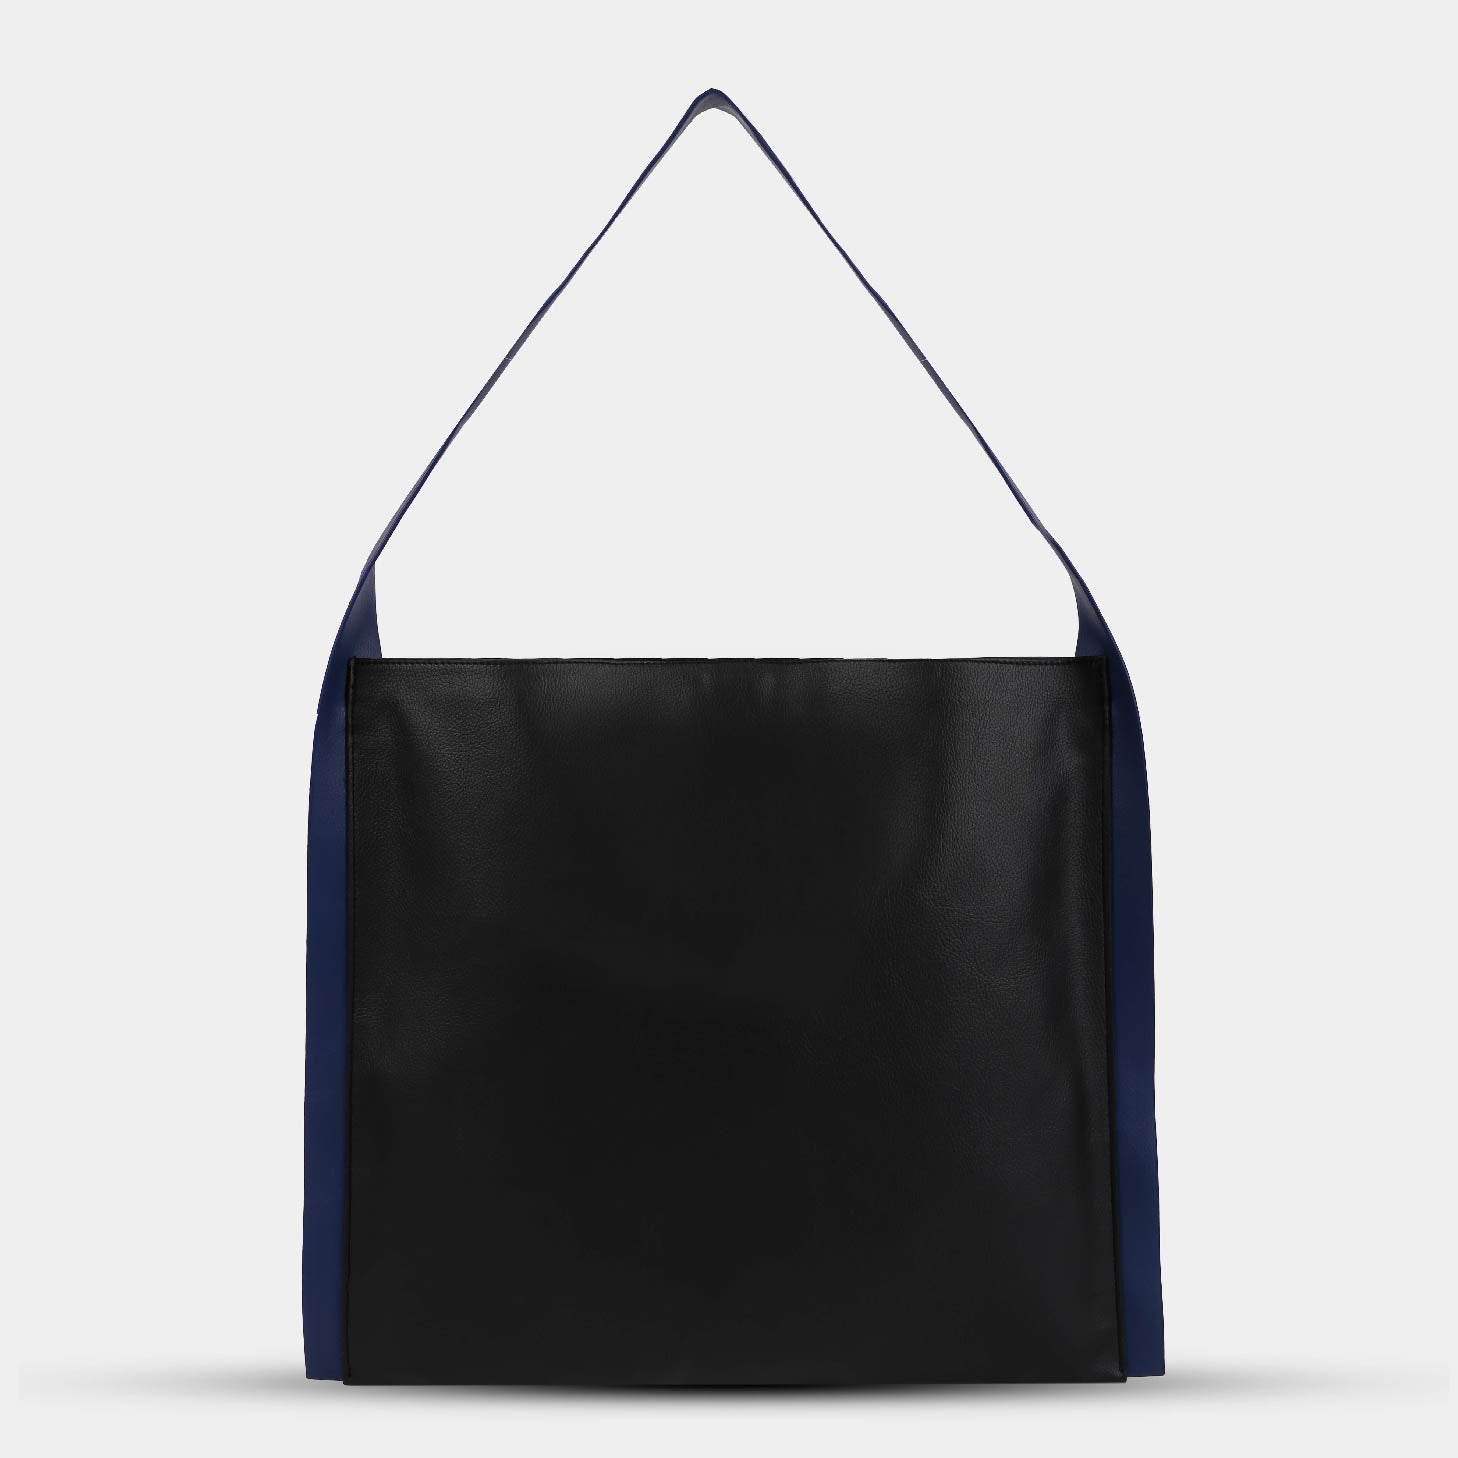 Túi xách PAPER TOTE màu đen dây xanh dương